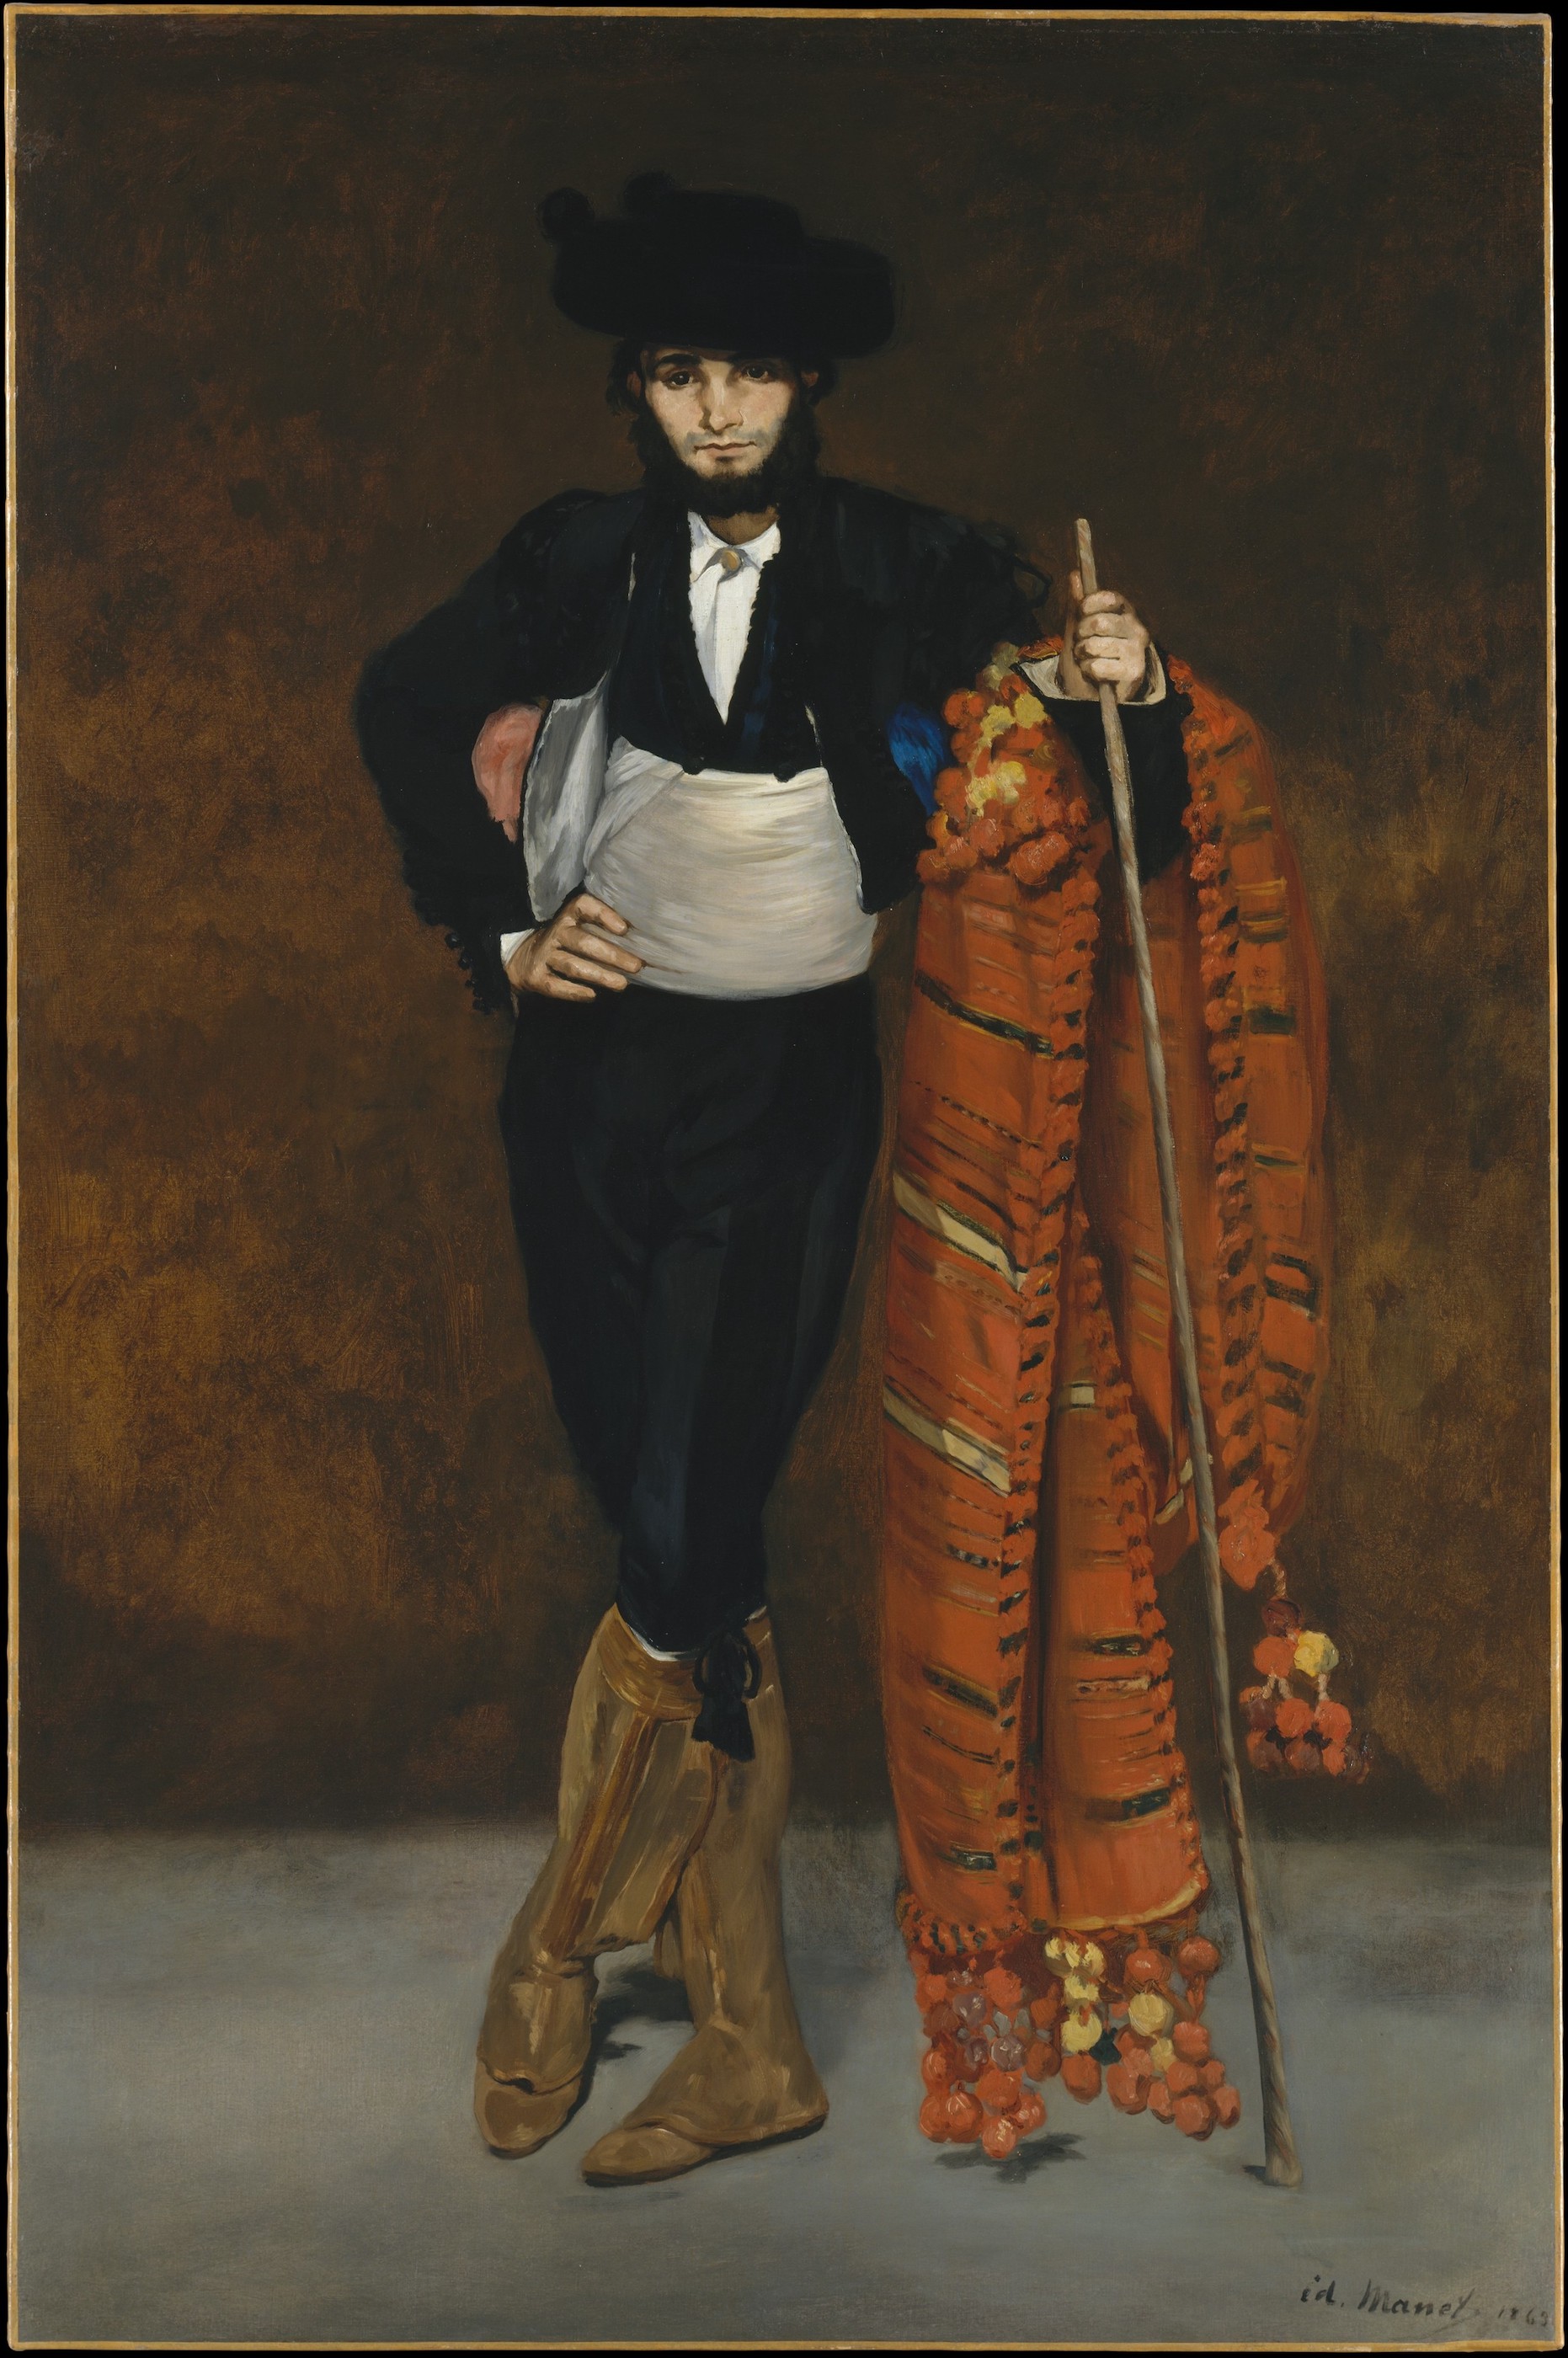 マホの衣装を着けた若者 by Édouard Manet - 1863年 - 188 x 124.8 cm 